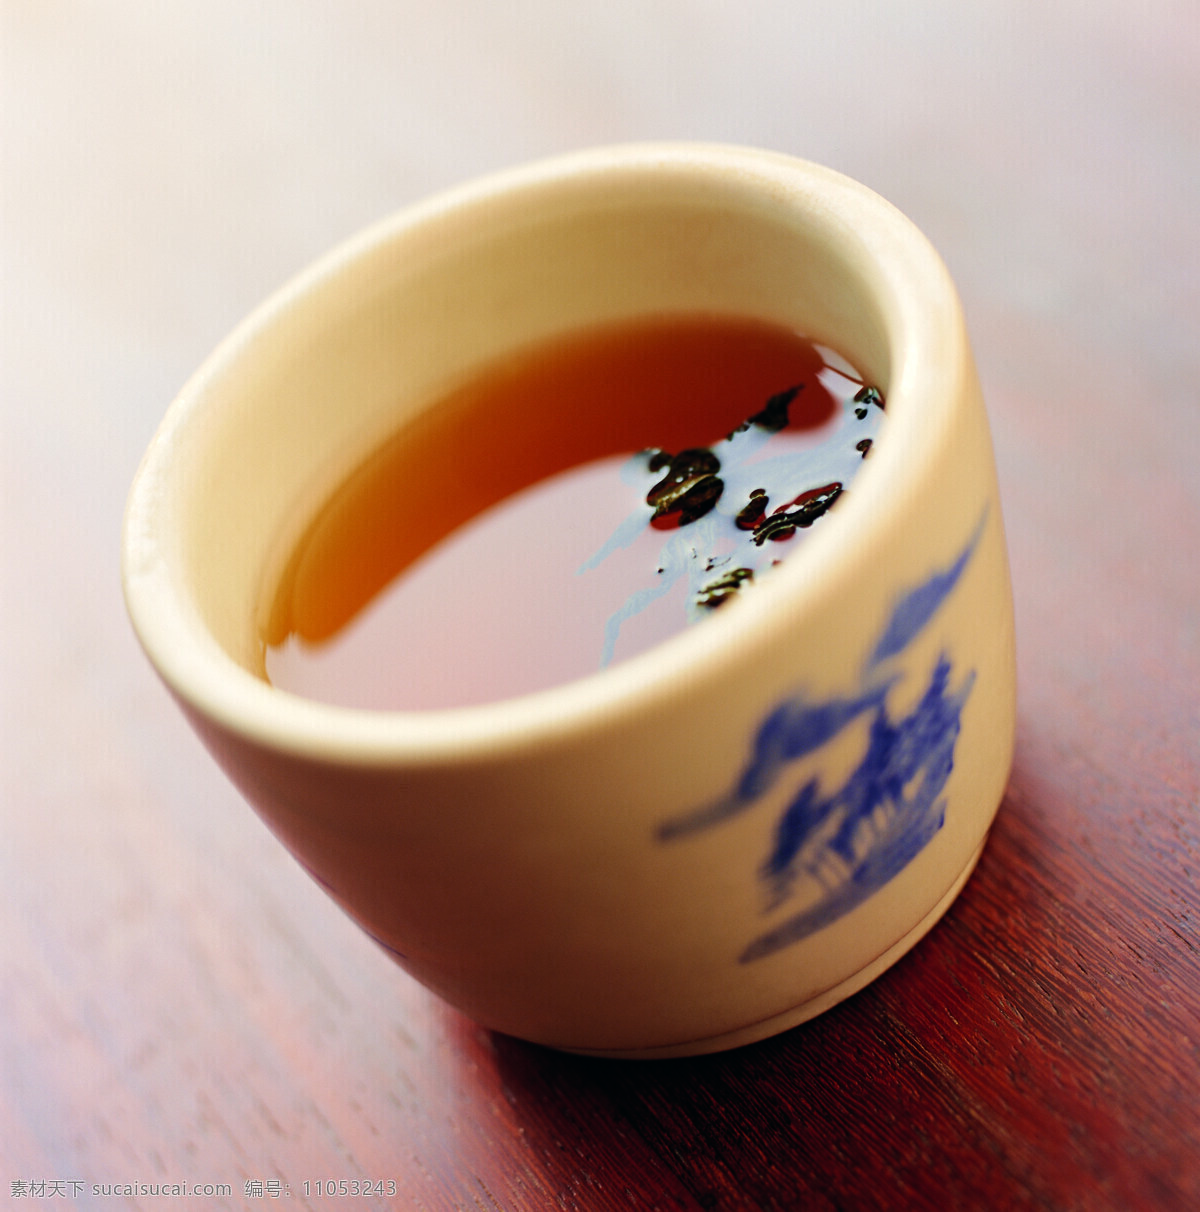 品茶 文化 茶 茶杯 茶文化 茶叶 风景 生活 旅游餐饮